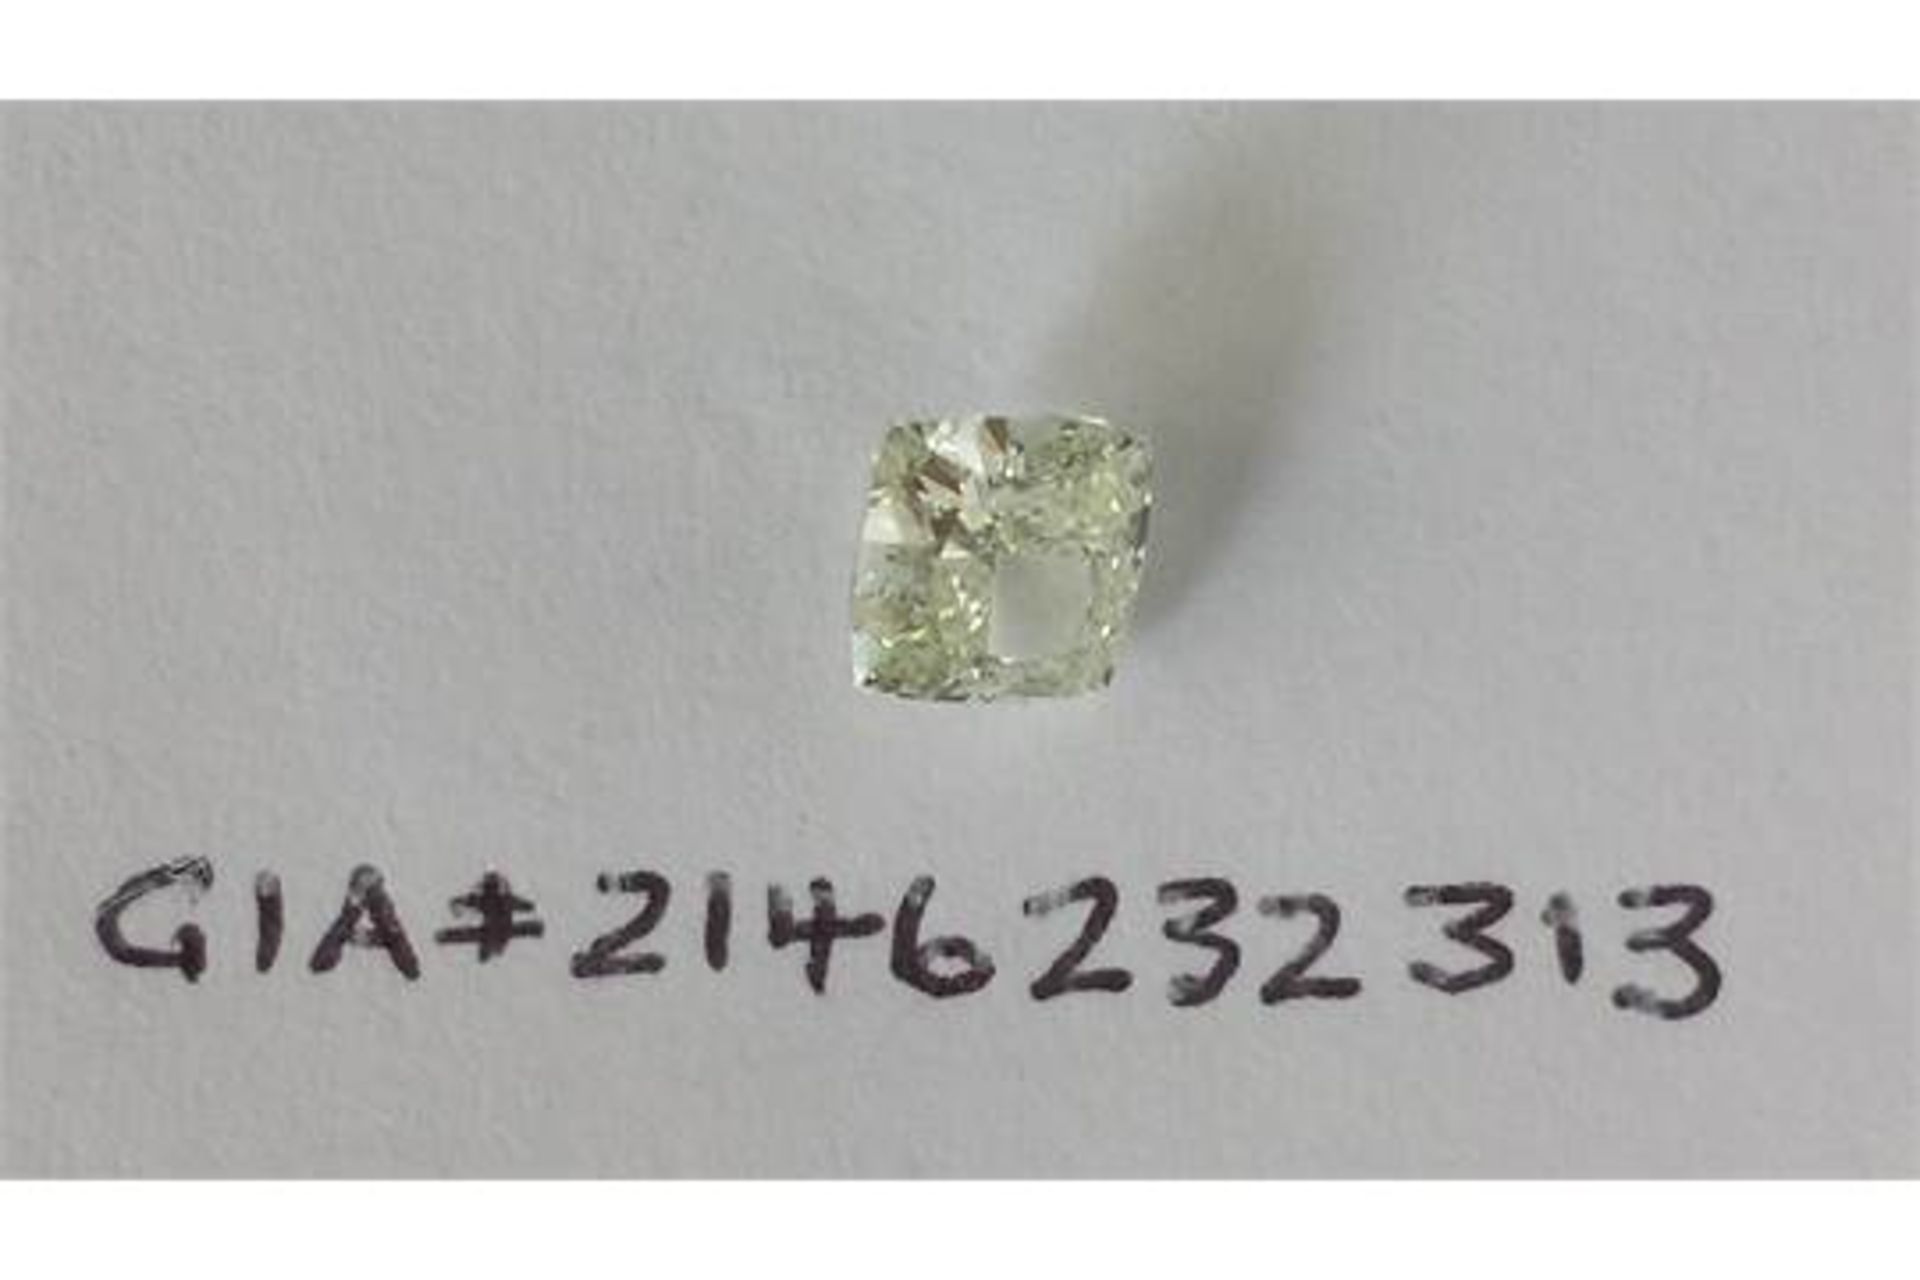 1.07 carat Modified Square Brilliant Diamond